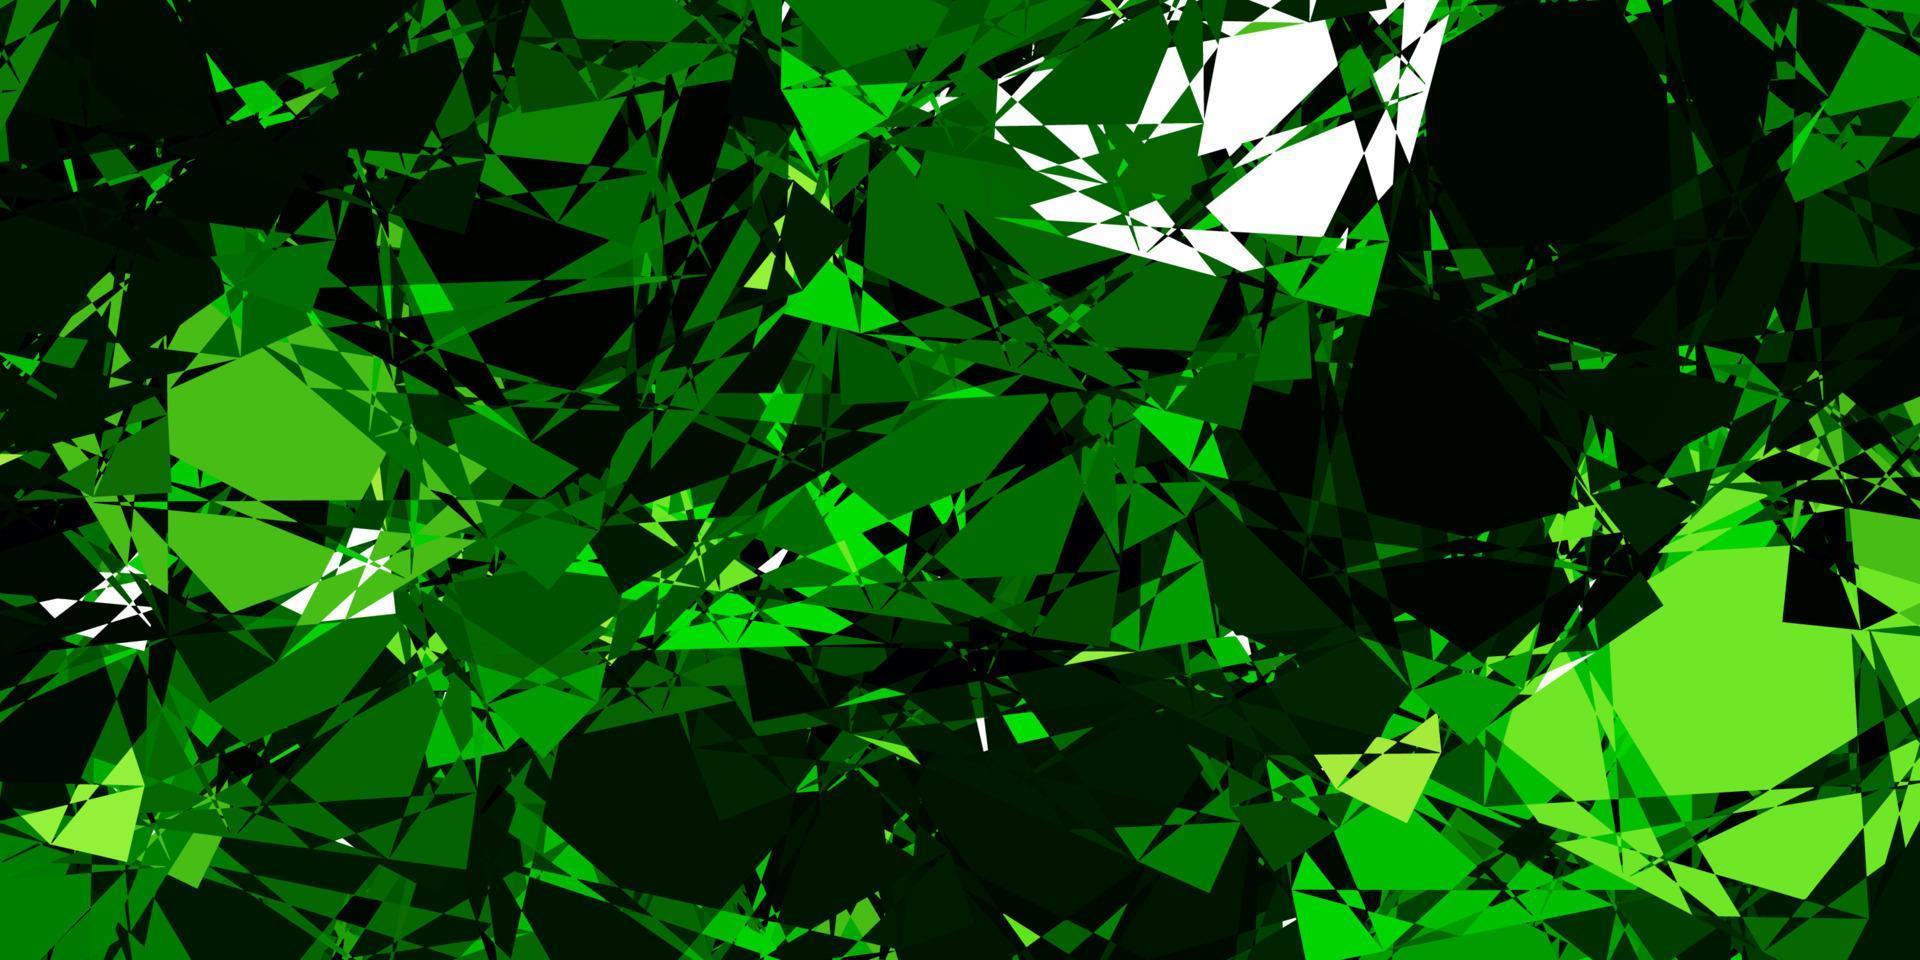 sfondo vettoriale verde scuro con triangoli, linee.